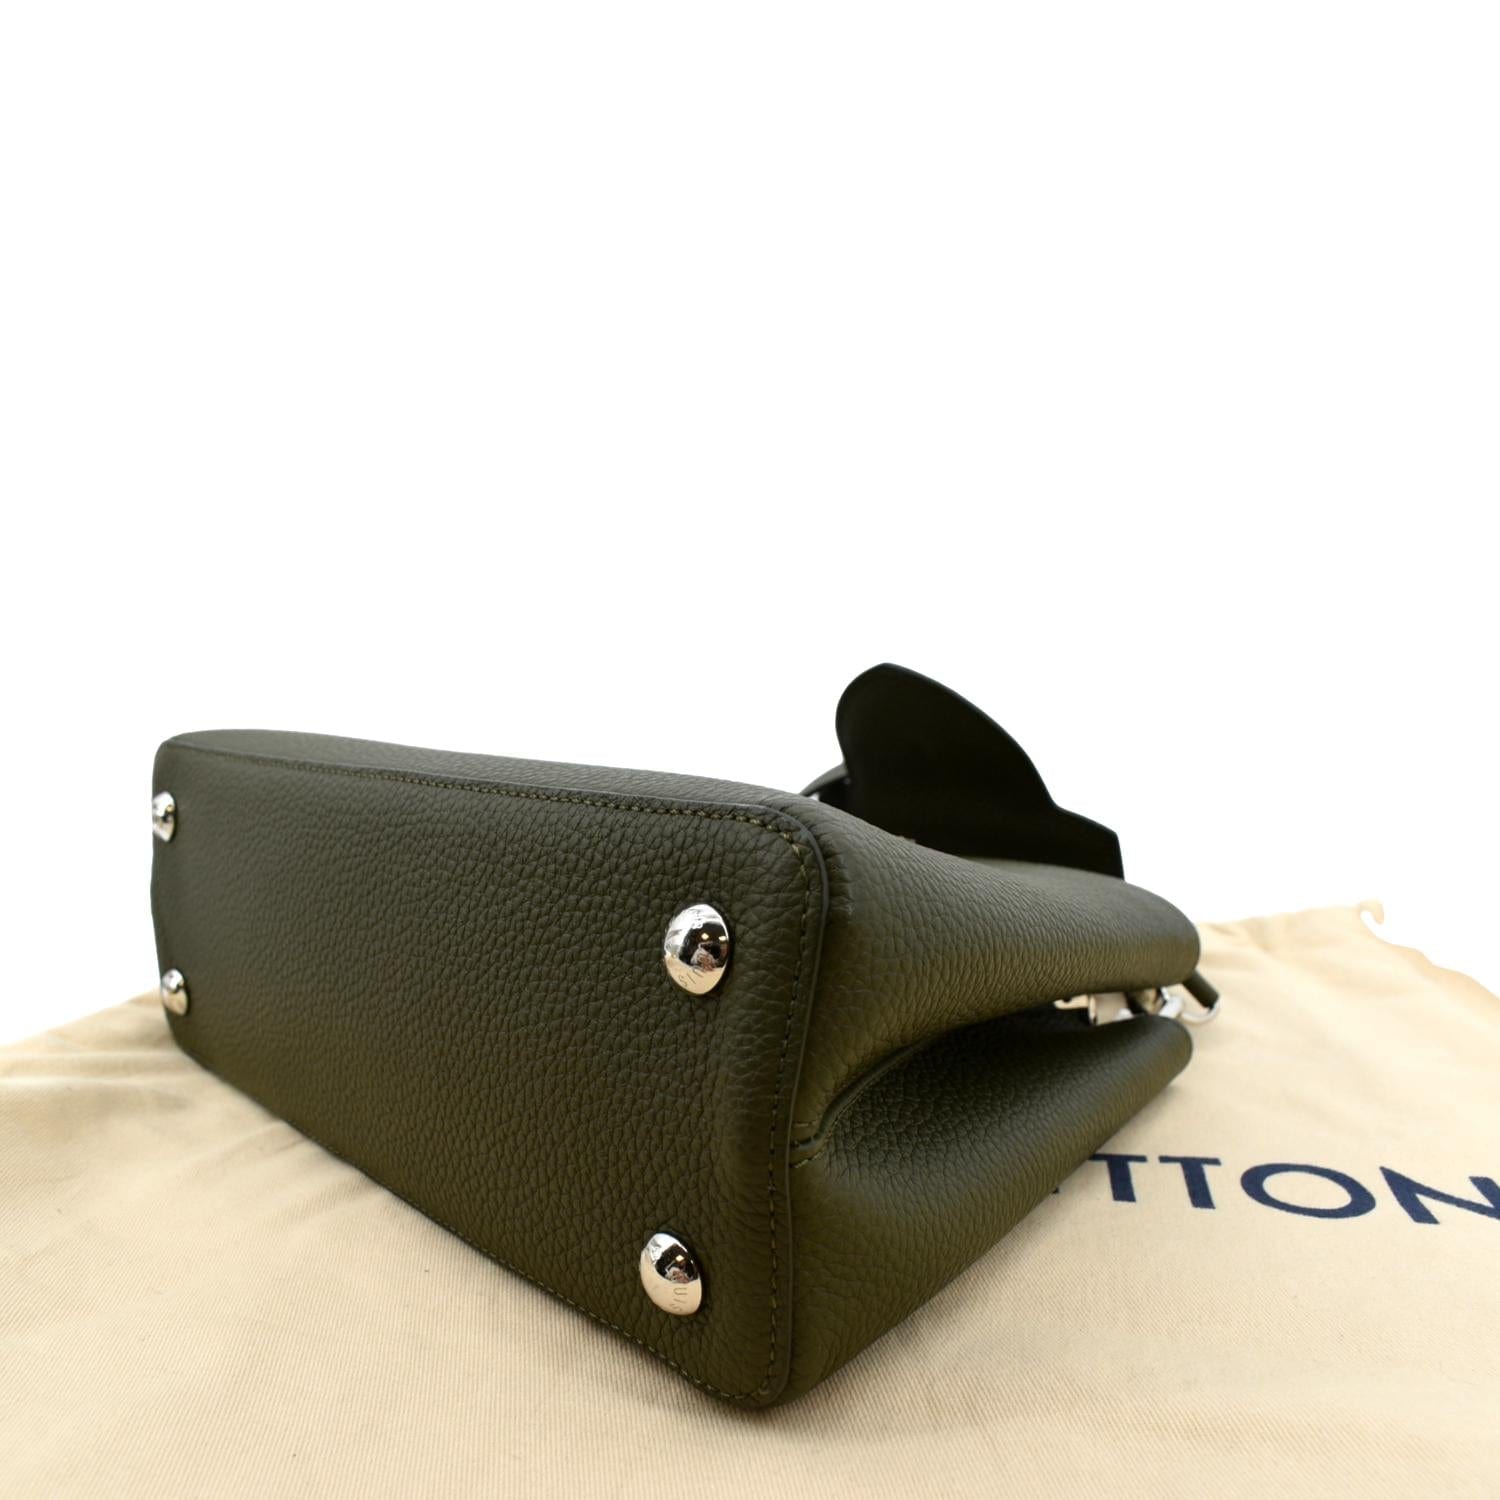 Louis Vuitton Python & Scarlet Taurillon Leather Capucines MM Bag., Lot  #58175